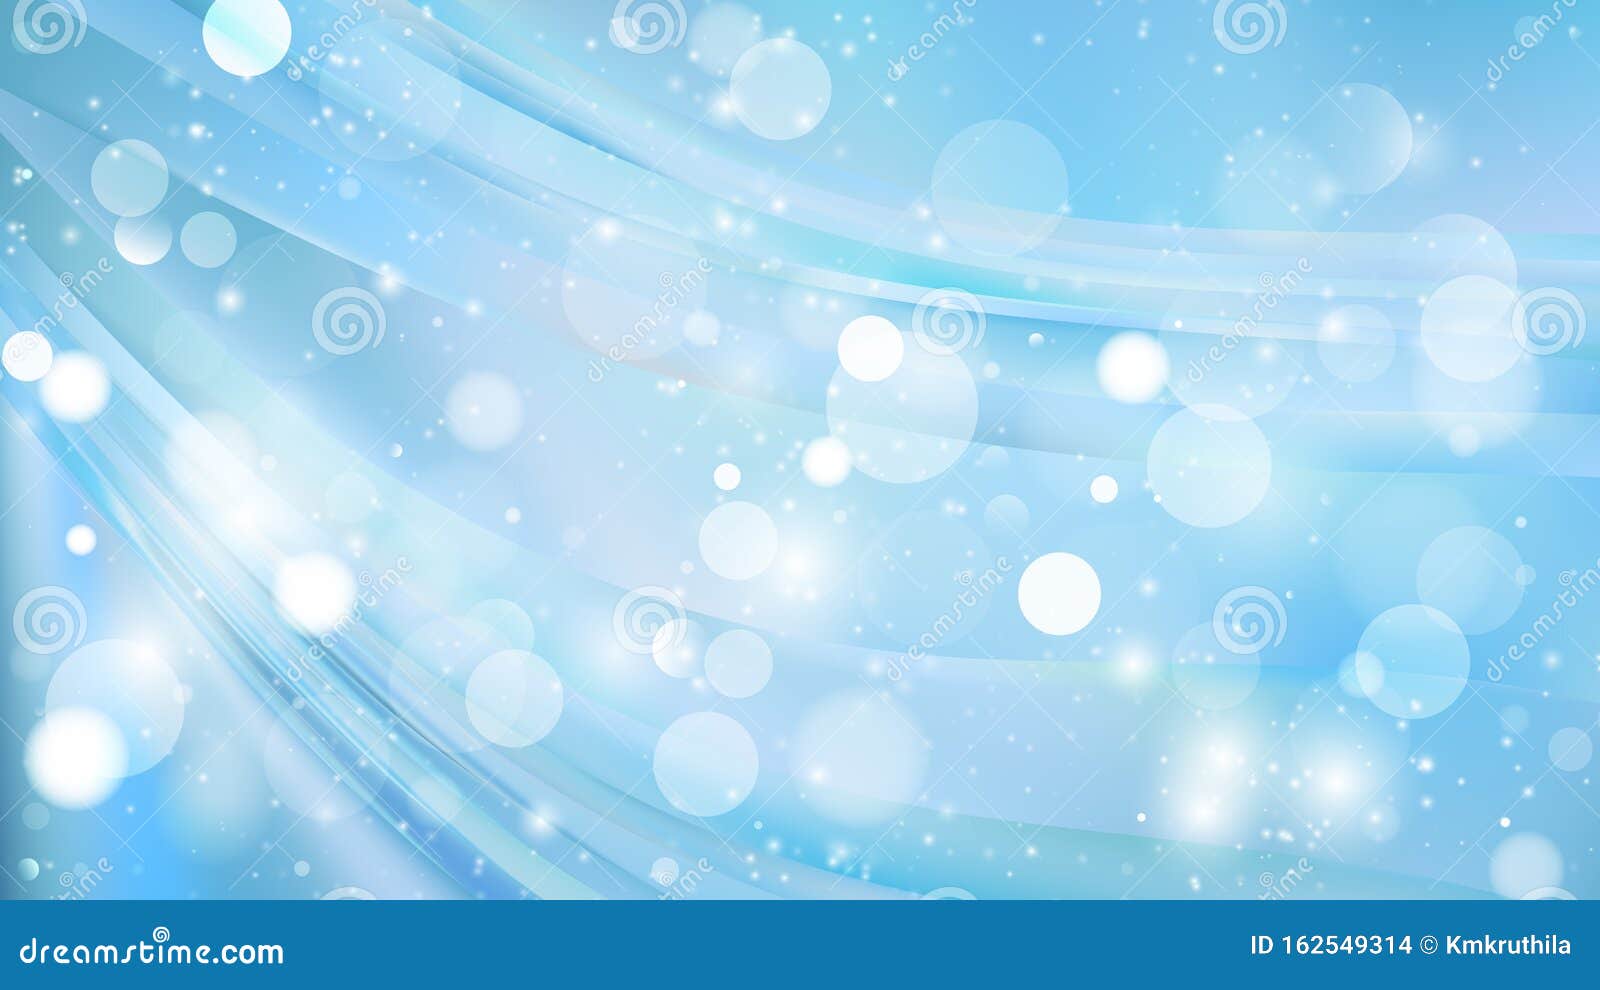 Hình nền trừu tượng Baby Blue Blur Lights Background Stock Vector sẽ mang đến cho bạn một thế giới đầy mơ mộng và tưởng tượng. Với gam màu xanh nhạt mờ, chiếc máy tính của bạn sẽ trở nên phong cách và thu hút hơn bao giờ hết.